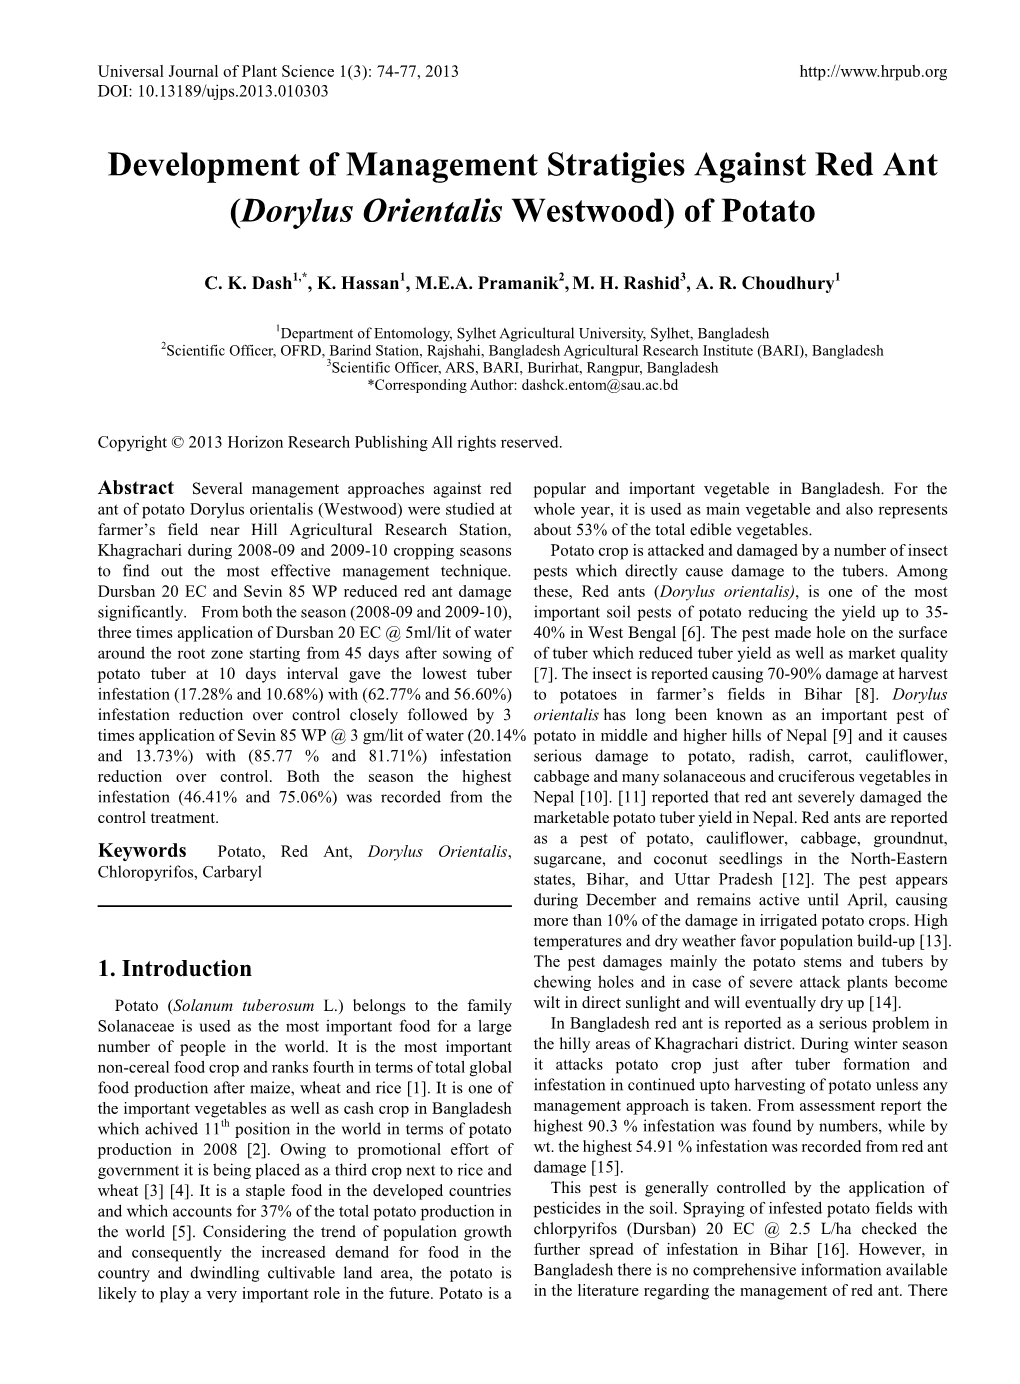 (Dorylus Orientalis Westwood) of Potato